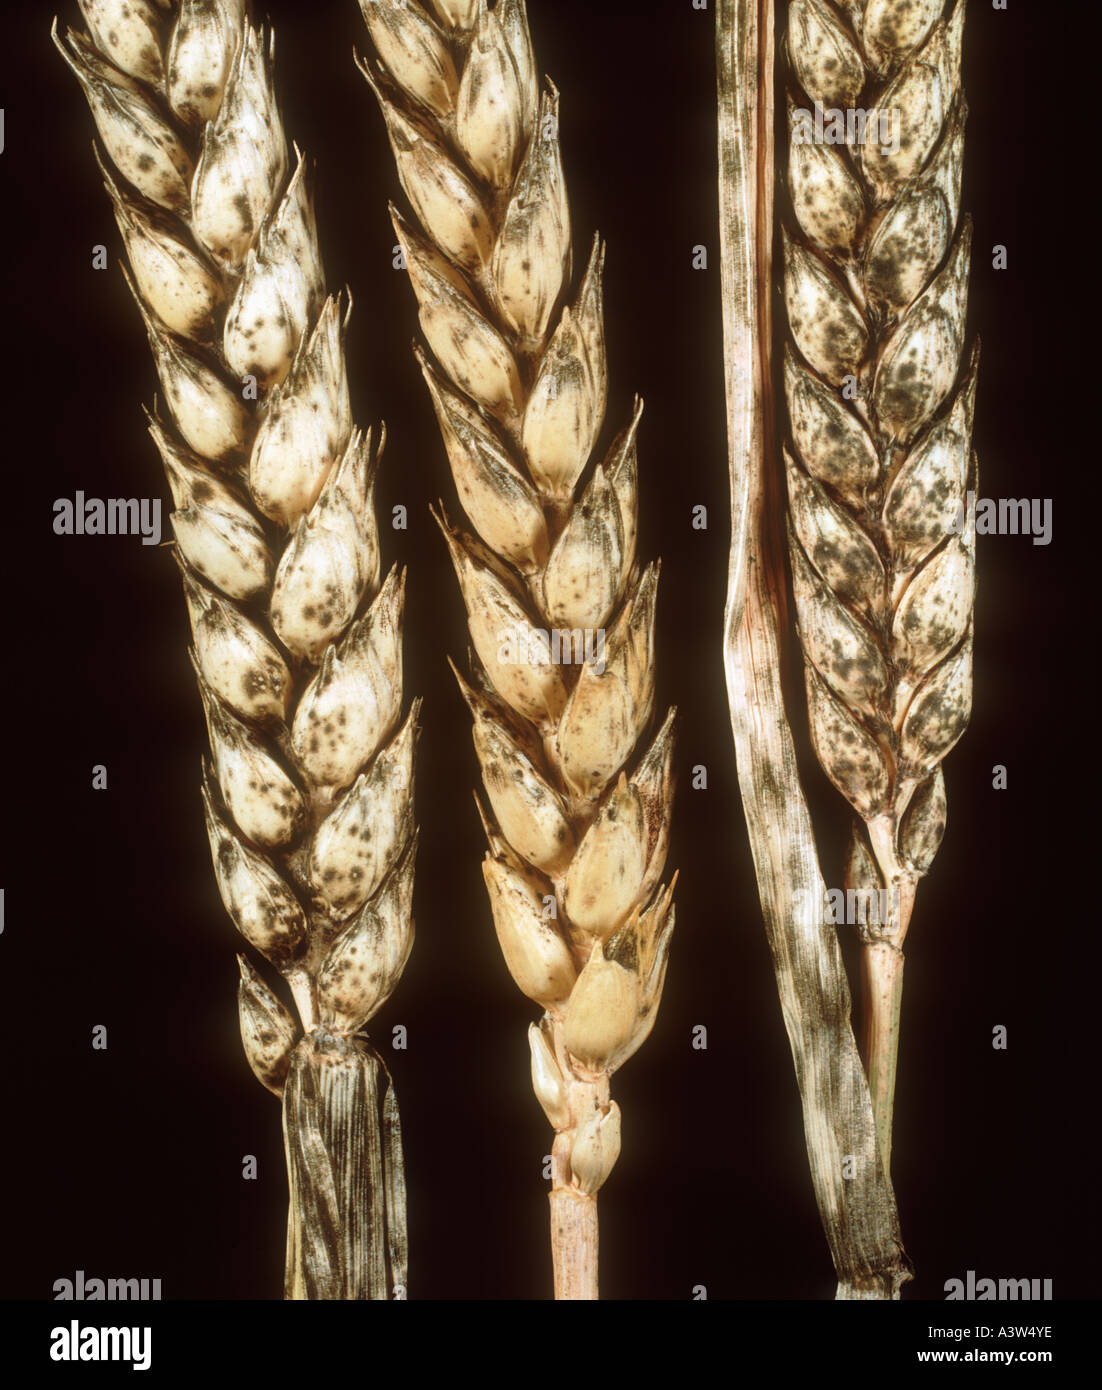 La fumagine moule tête noire Cladosporium ou Alternaria spp sur blé mûr Banque D'Images